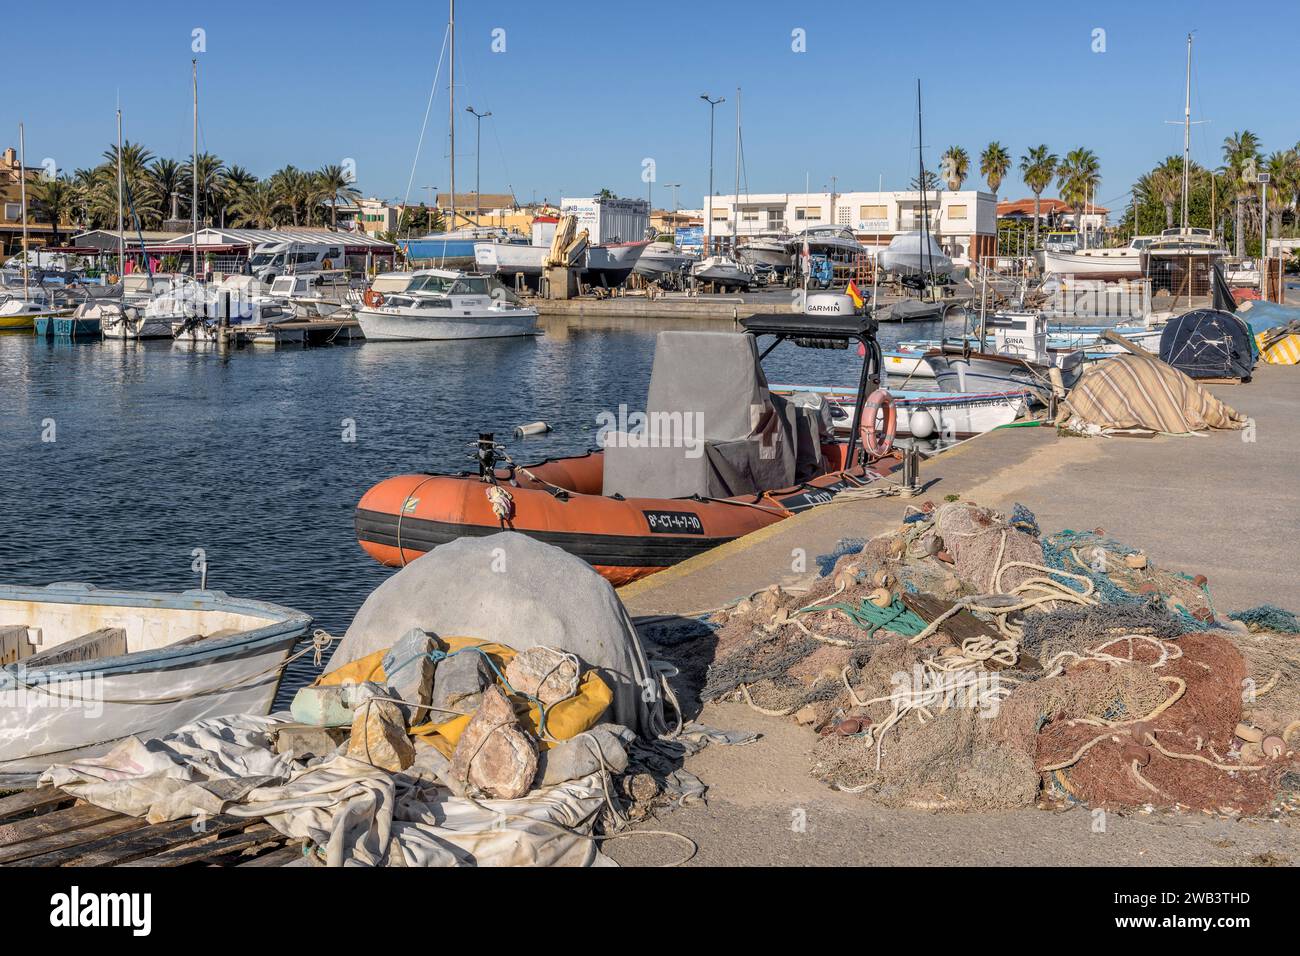 Promenade du port de pêche et de sports avec yachts bateaux de pêche et bateaux à voile dans la région de Cabo de Palos de Murcie, Espagne, Europe Banque D'Images